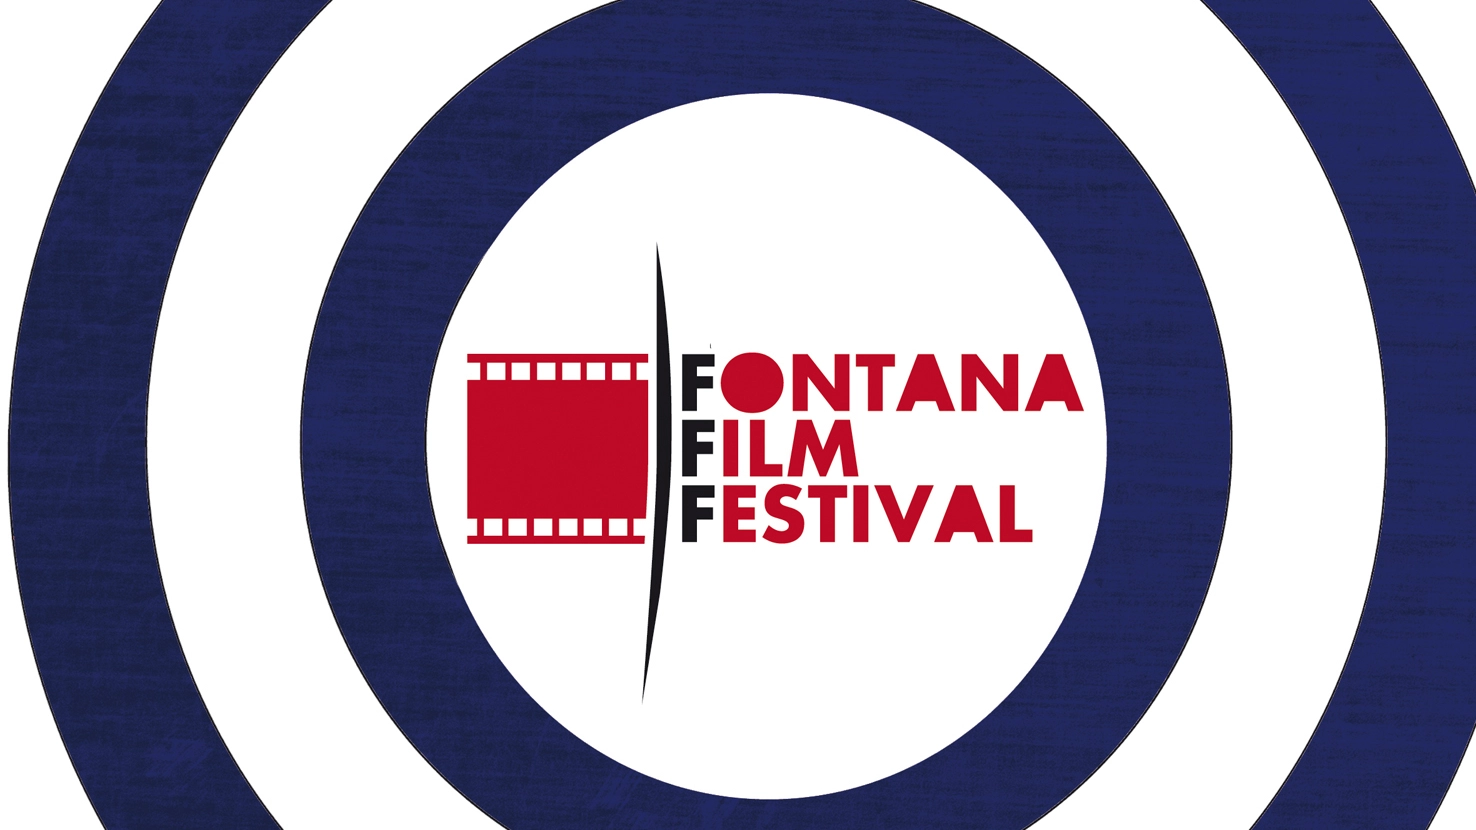 Fontana Film Festival